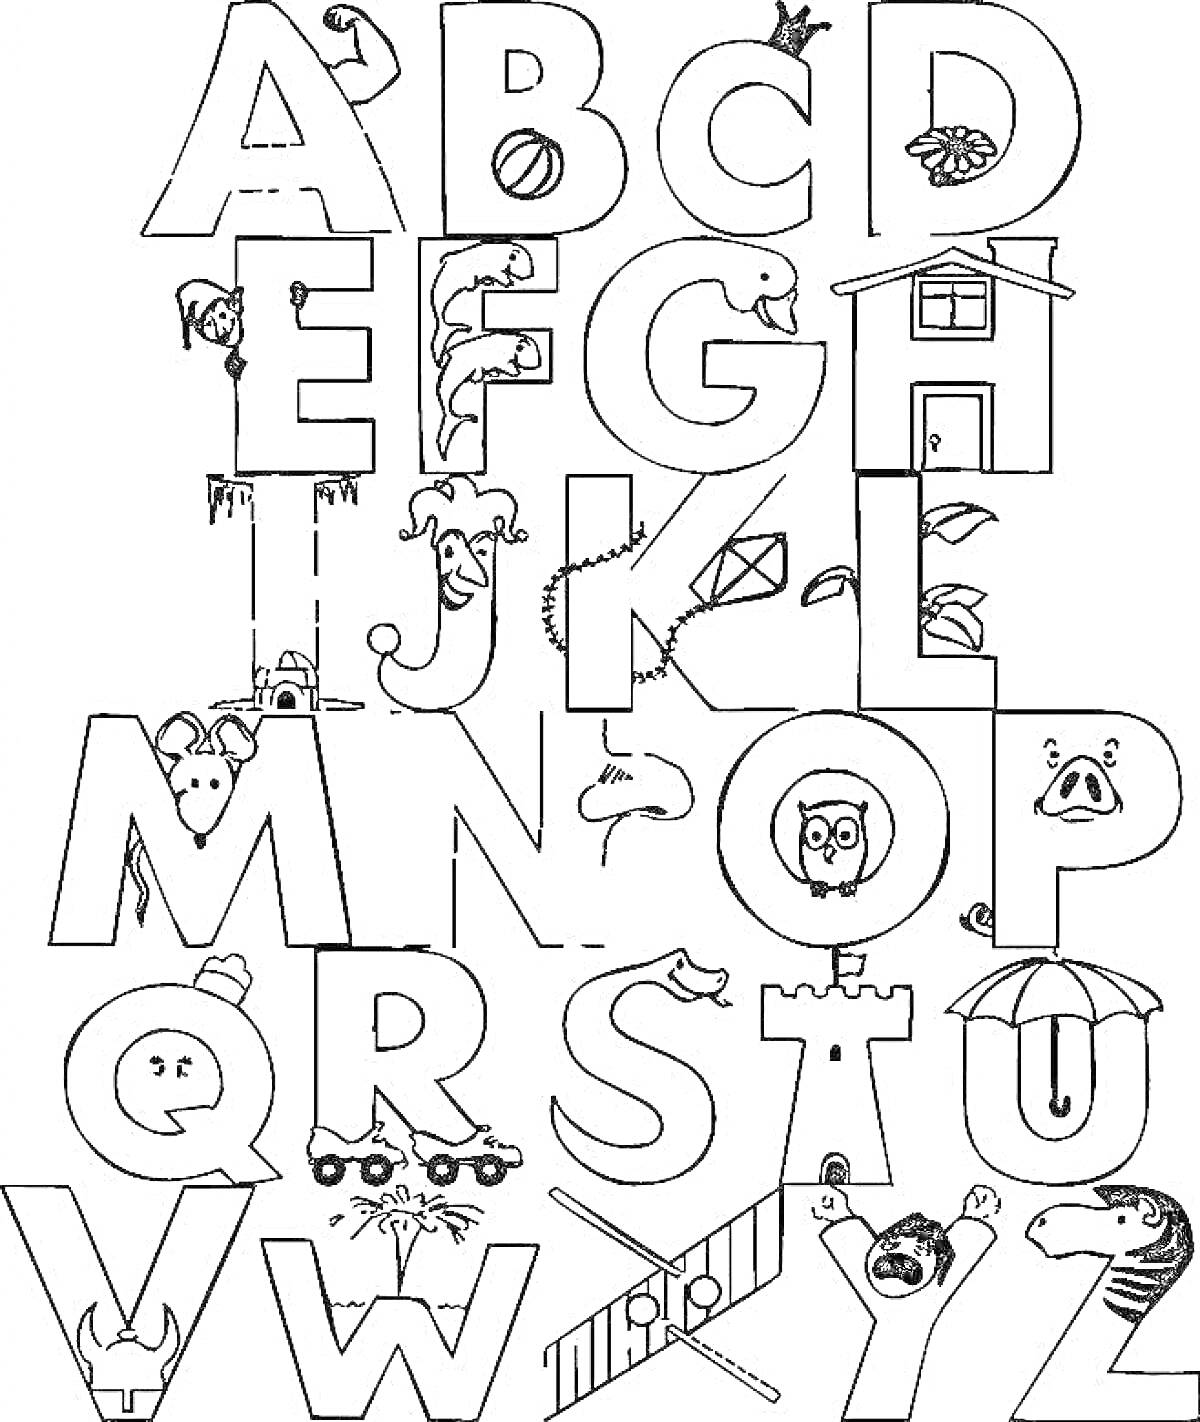 Раскраска Алфавит с изображениями, иллюстрирующими каждую букву (яблоко, пчела, мышка, собака, сова, зебра и др.)